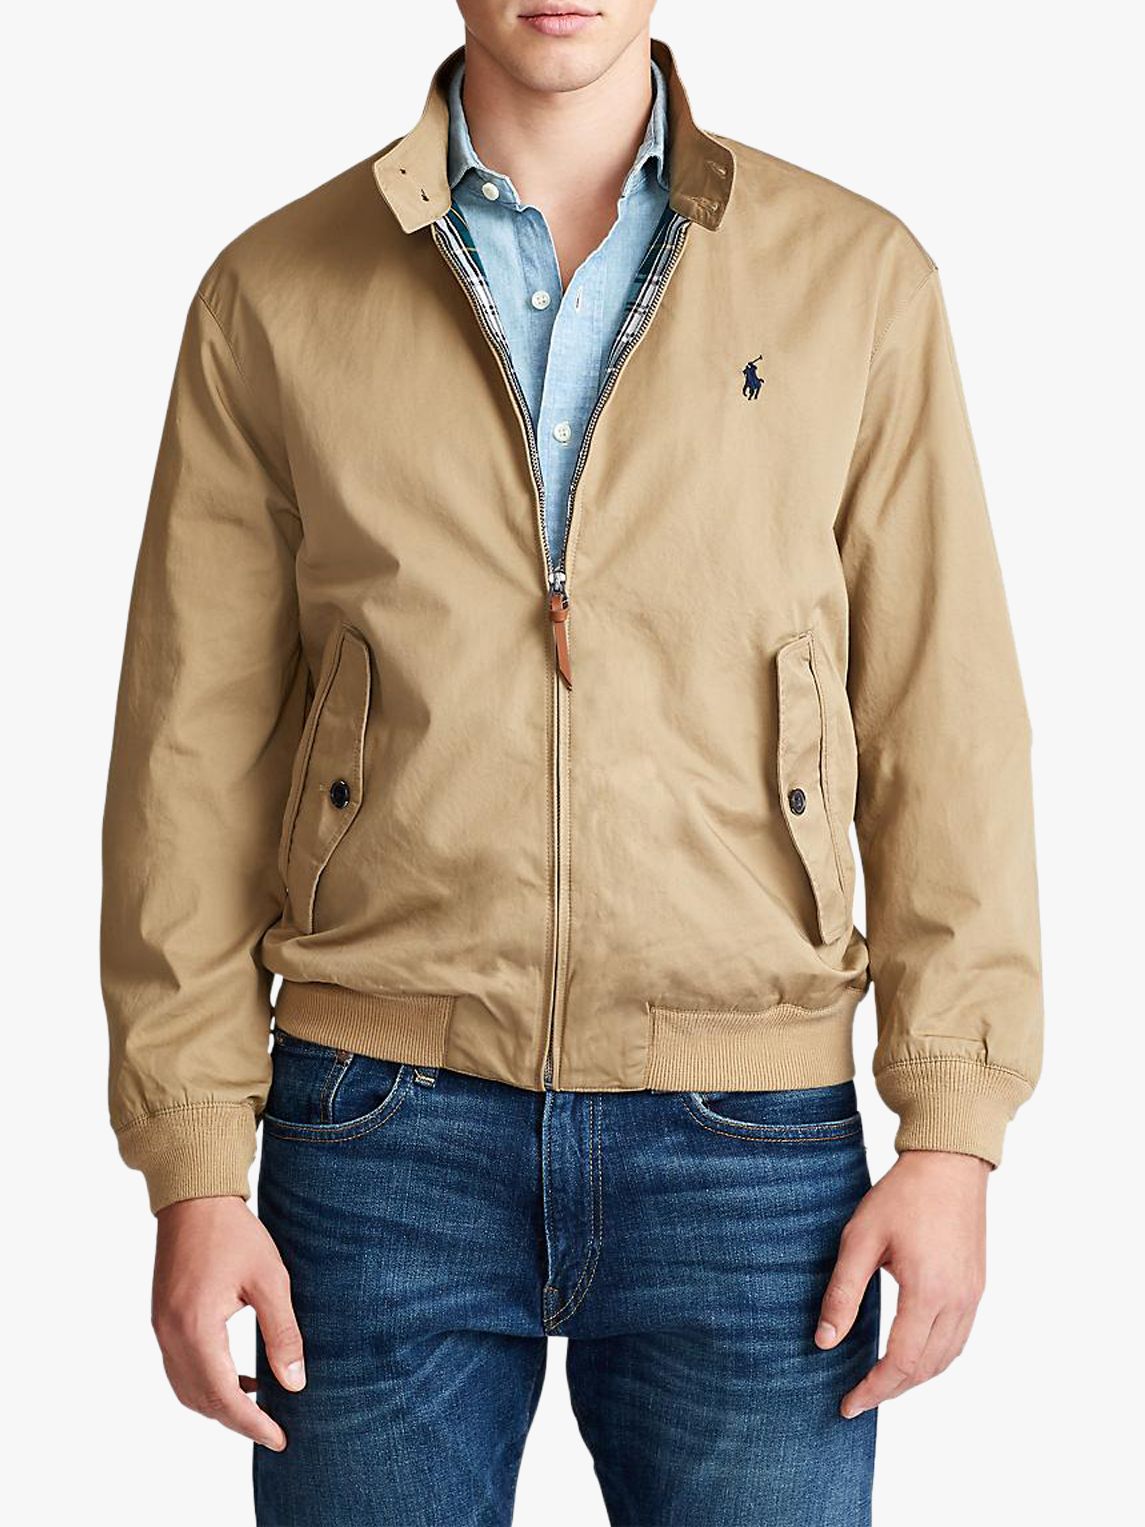 polo cotton jacket